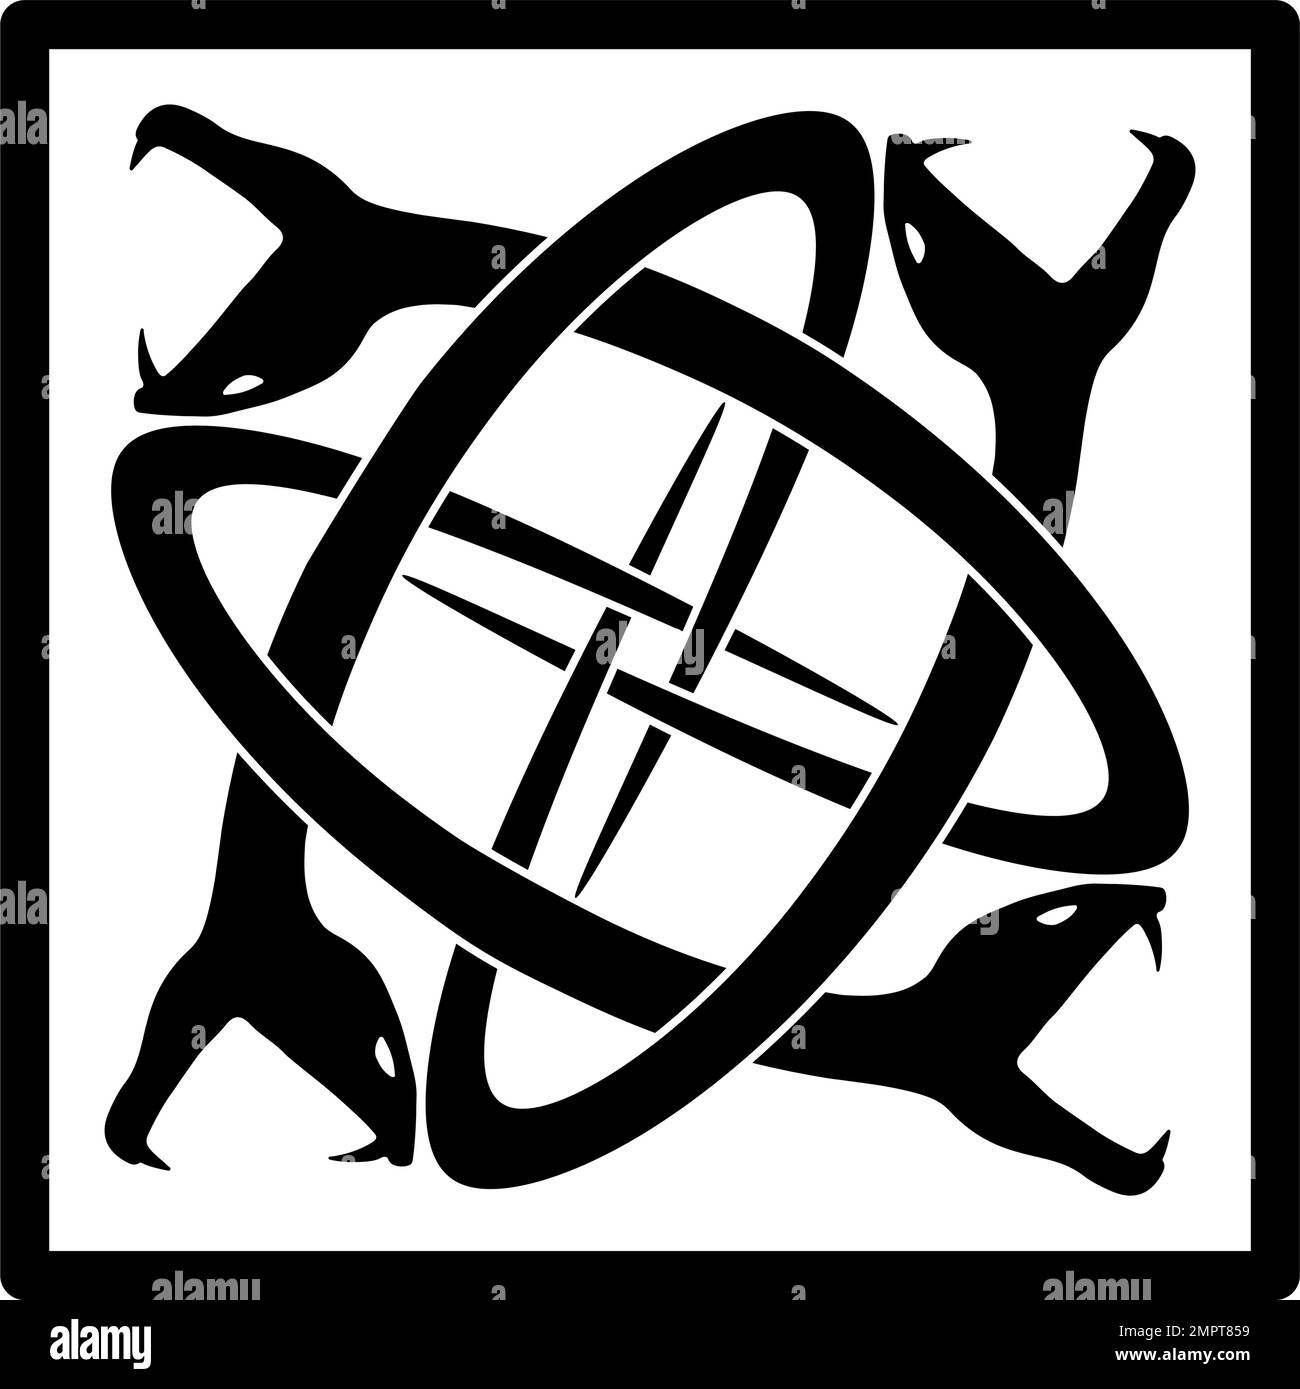 Cuatro serpientes entrelazadas encerradas en un cuadrado - negro sobre blanco Ilustración del Vector